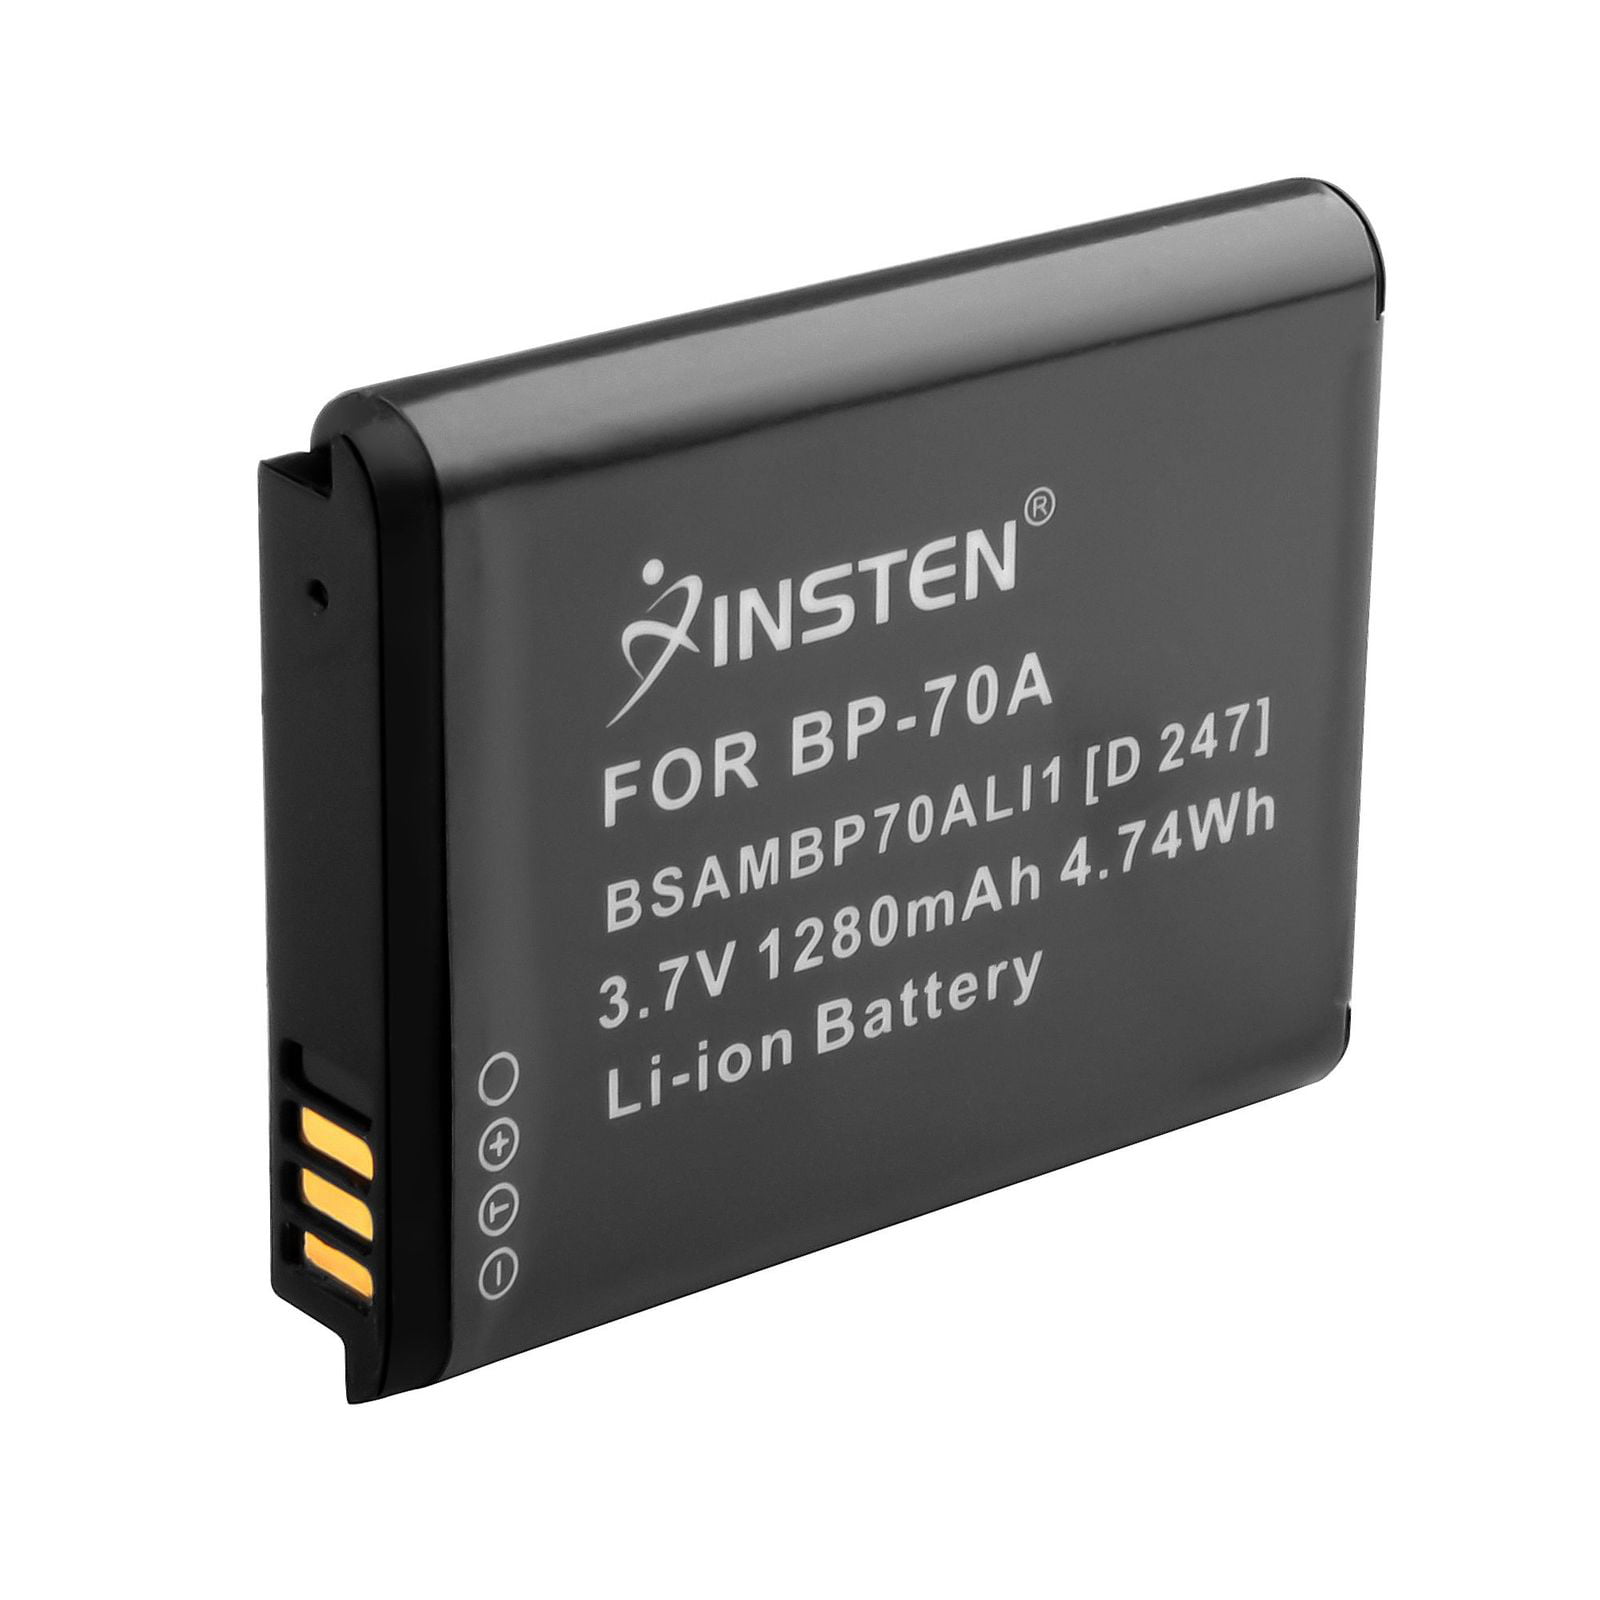 BP-70a EA-BP70A Batería intensilo 700mAh para Samsung BP70a SLB-70A